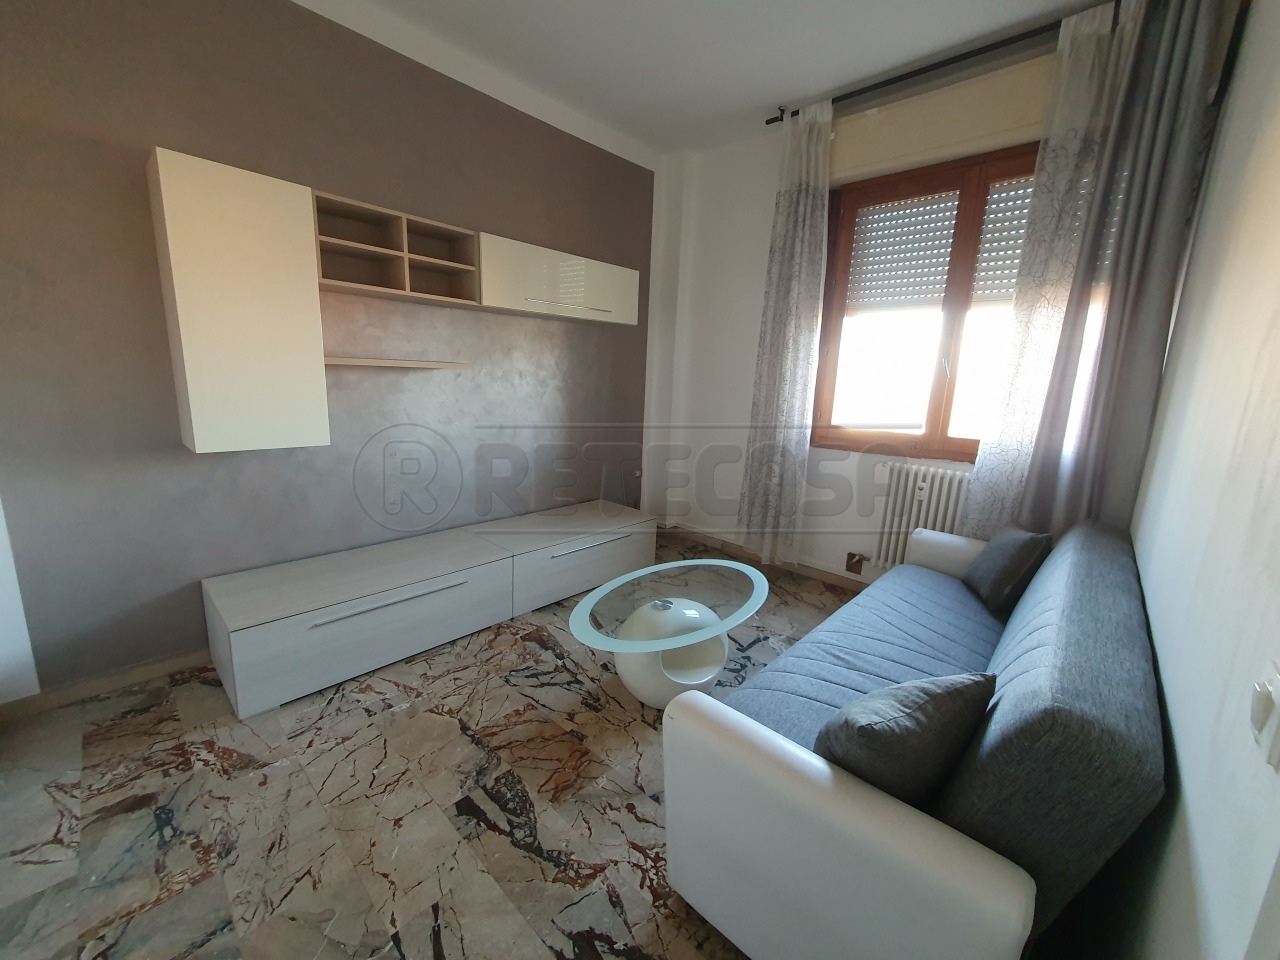 Appartamento in vendita a Cremona, 2 locali, prezzo € 59.900 | PortaleAgenzieImmobiliari.it